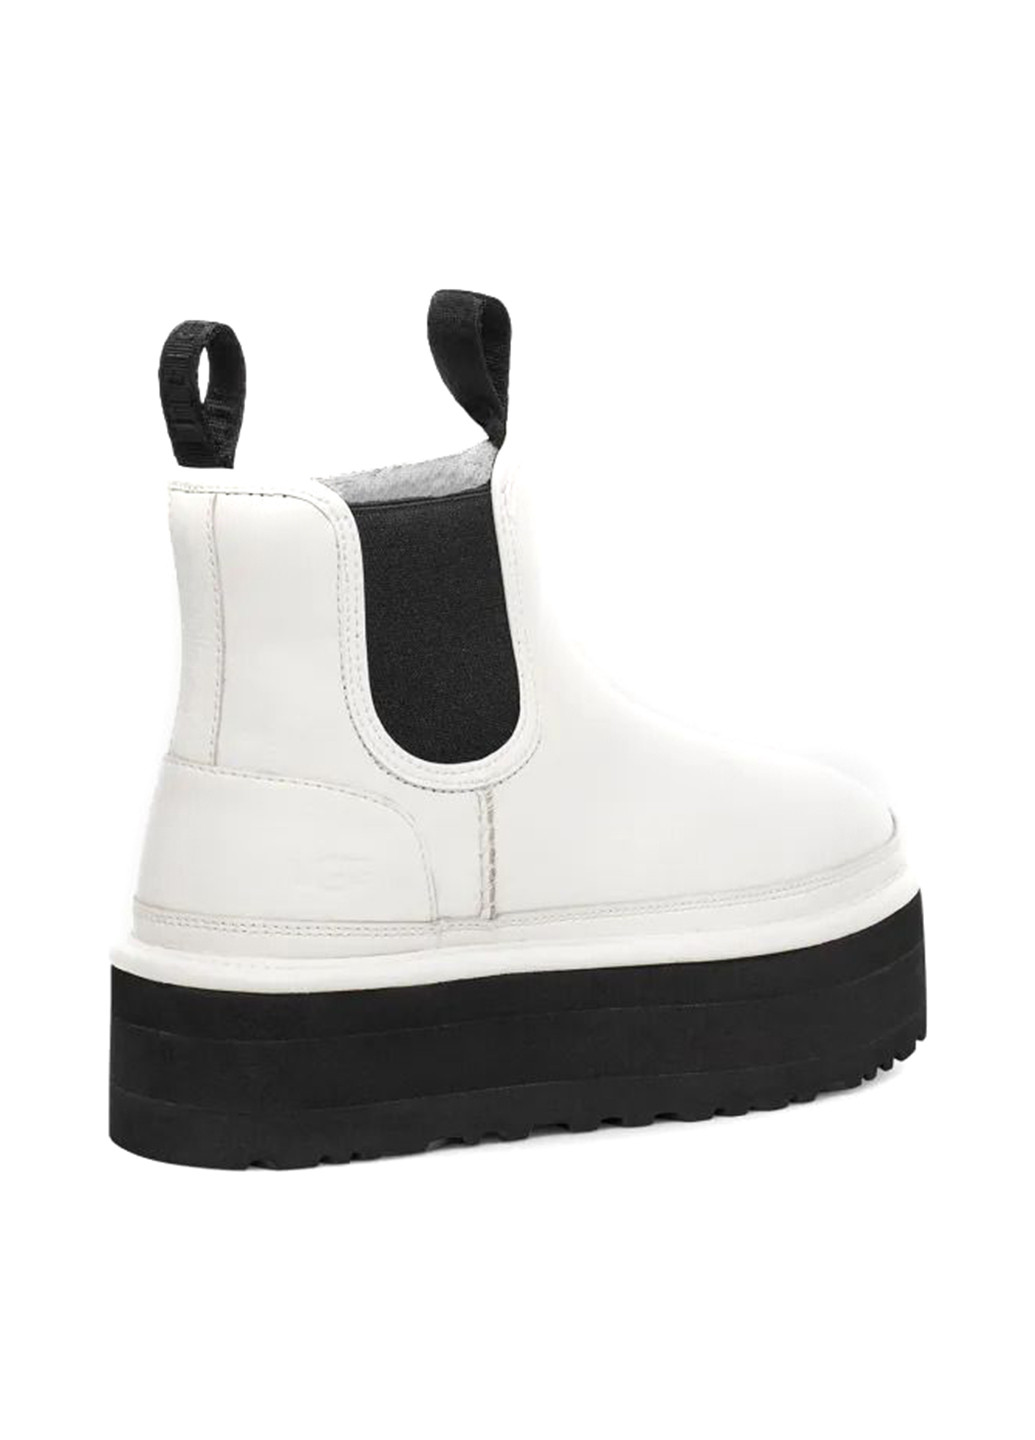 Белые ботинки UGG